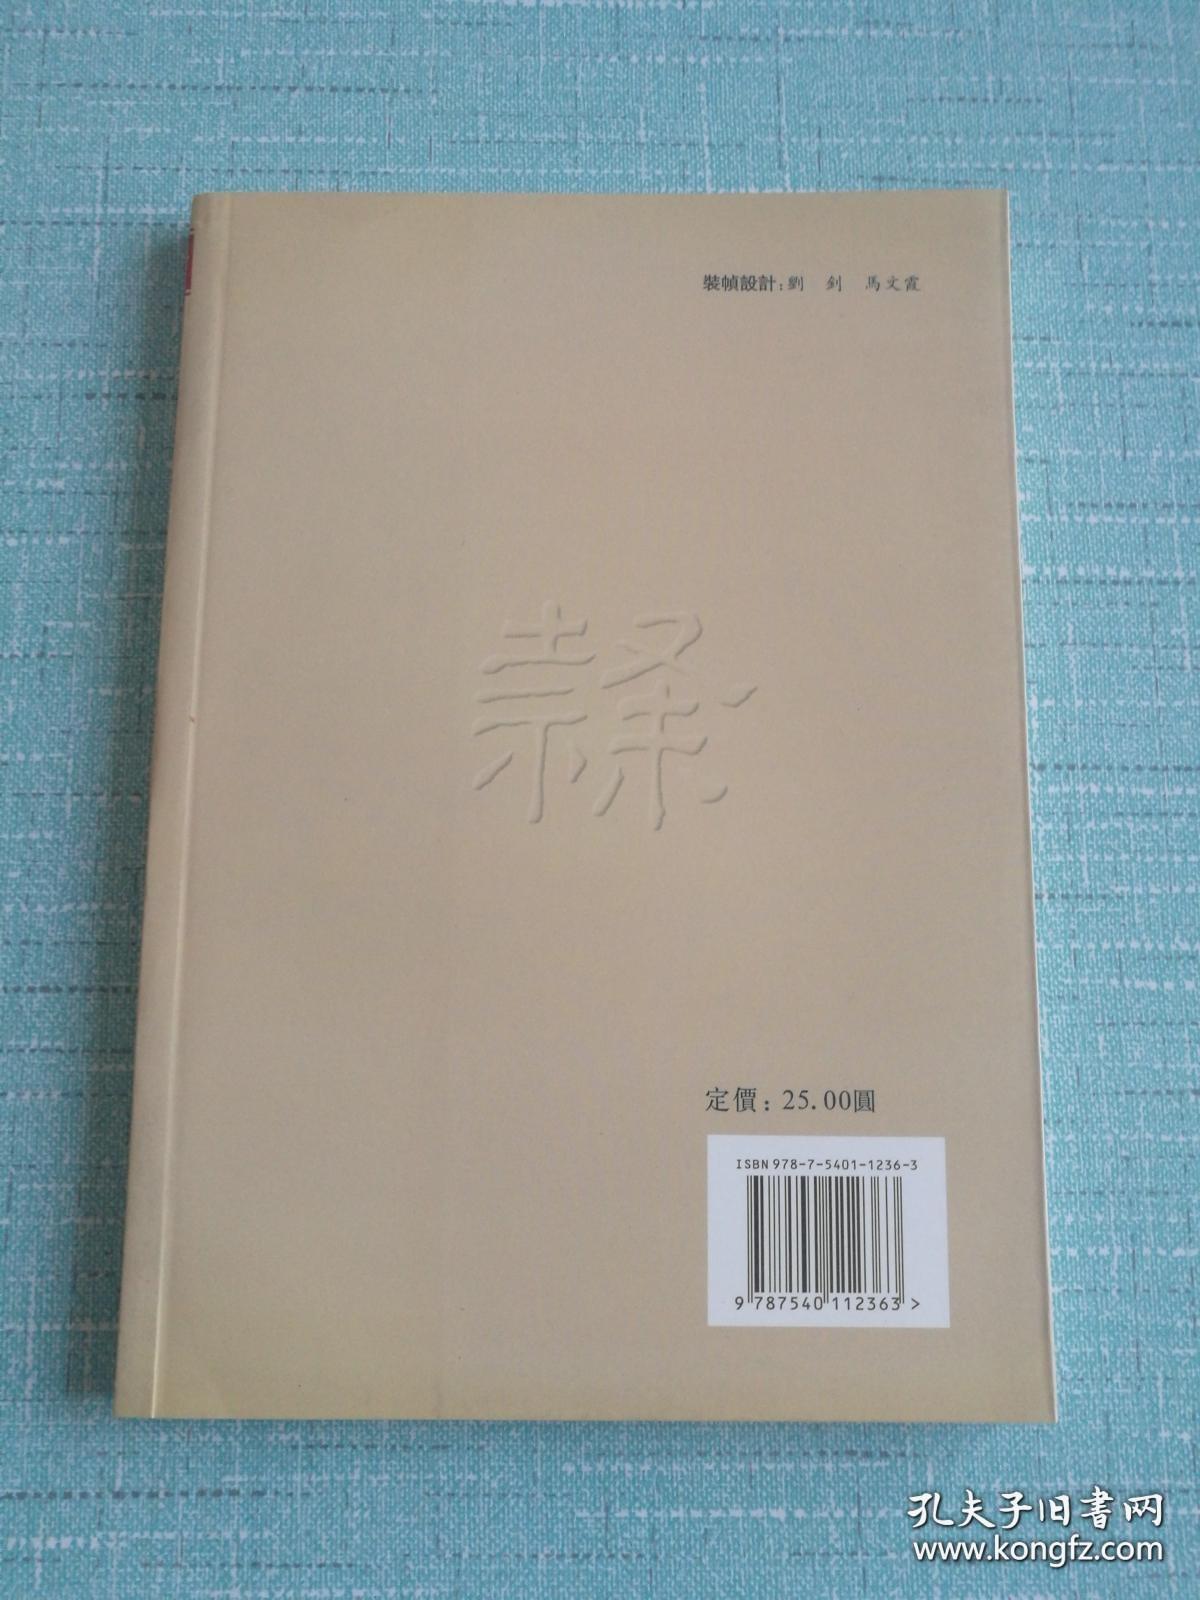 【隶书异体字字典】河南美术出版社出版 近全新